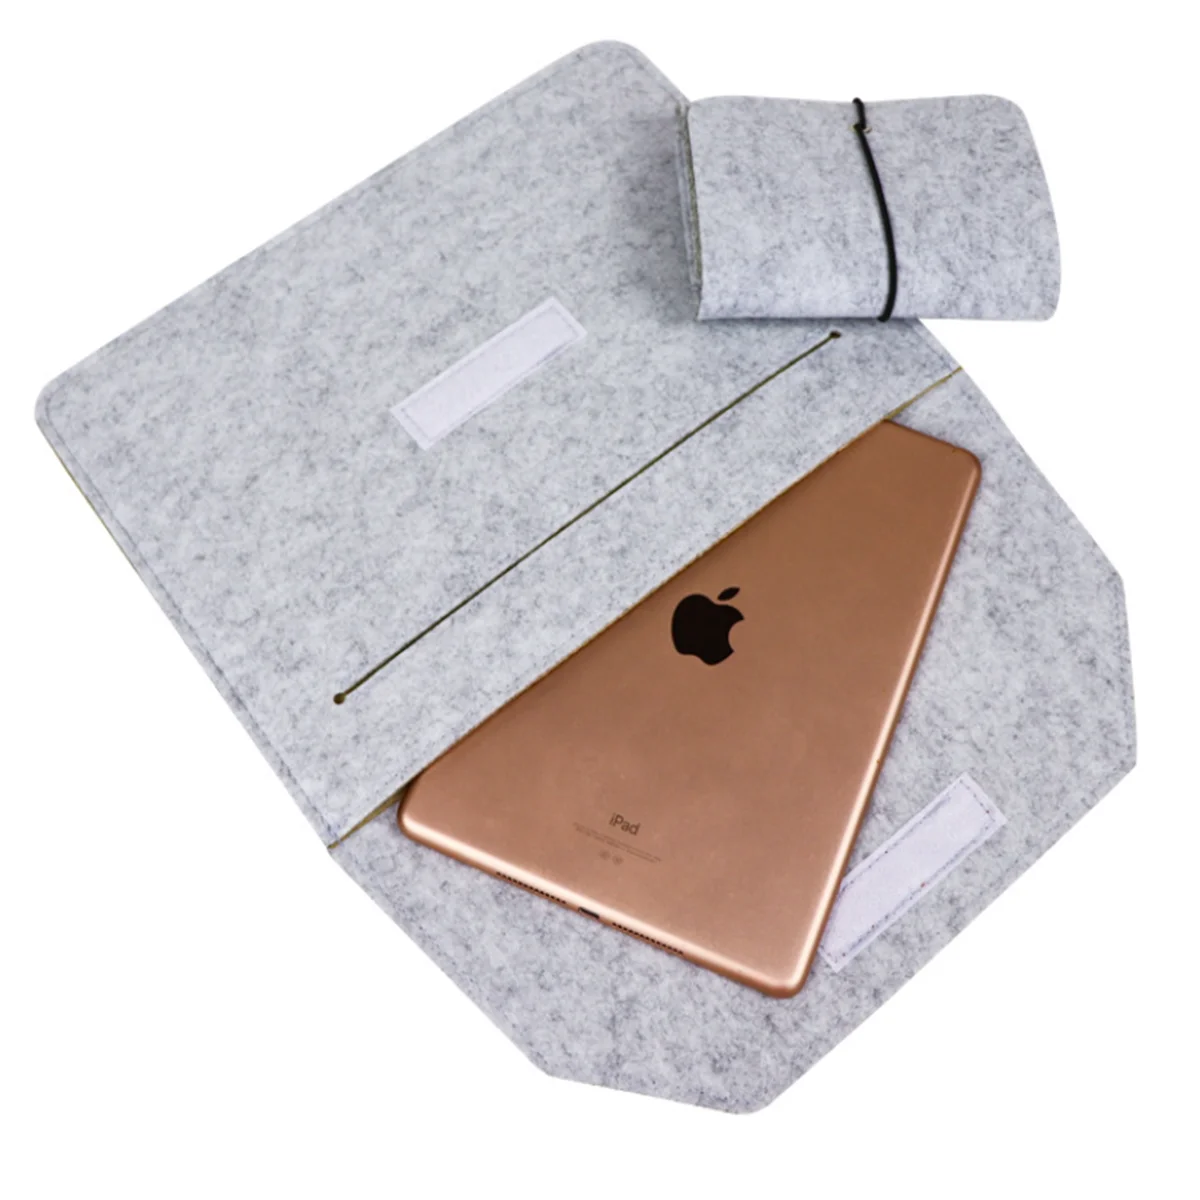 Чехол-конверт для ноутбука 12, 13, 14 дюймов, для Apple Macbook Air Pro 13,3, чехол для ноутбука HuaWei Honor MagicBook MateBook от AliExpress WW